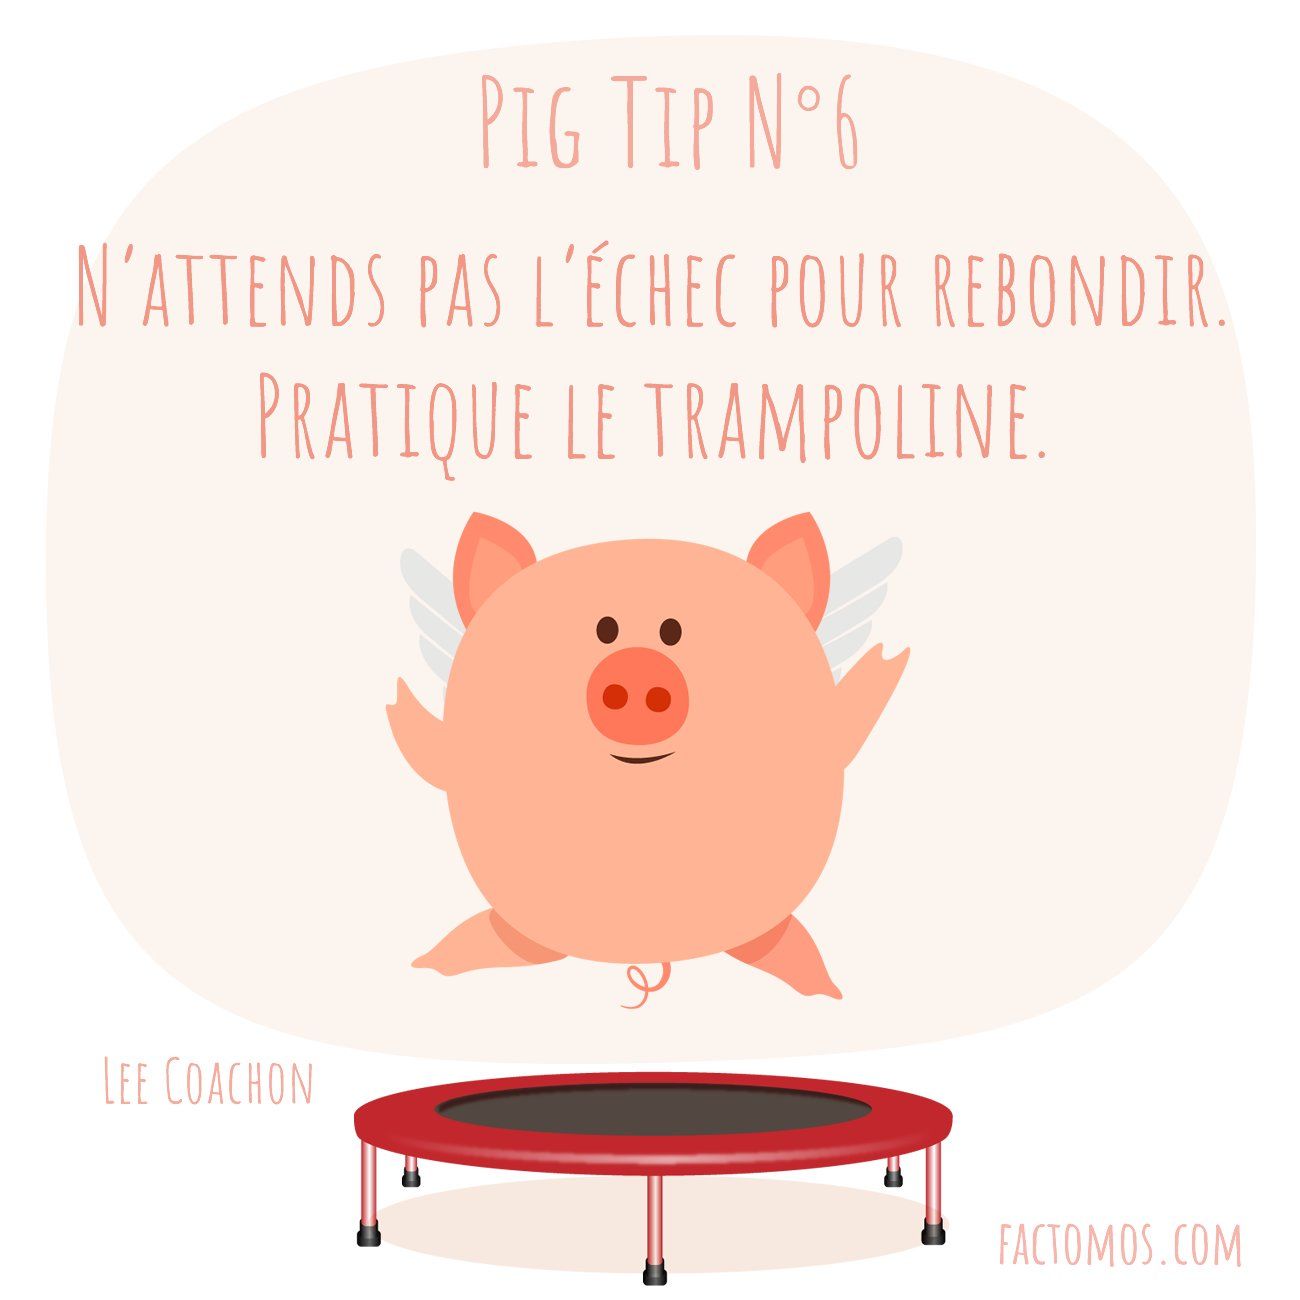 Pig Tip #7